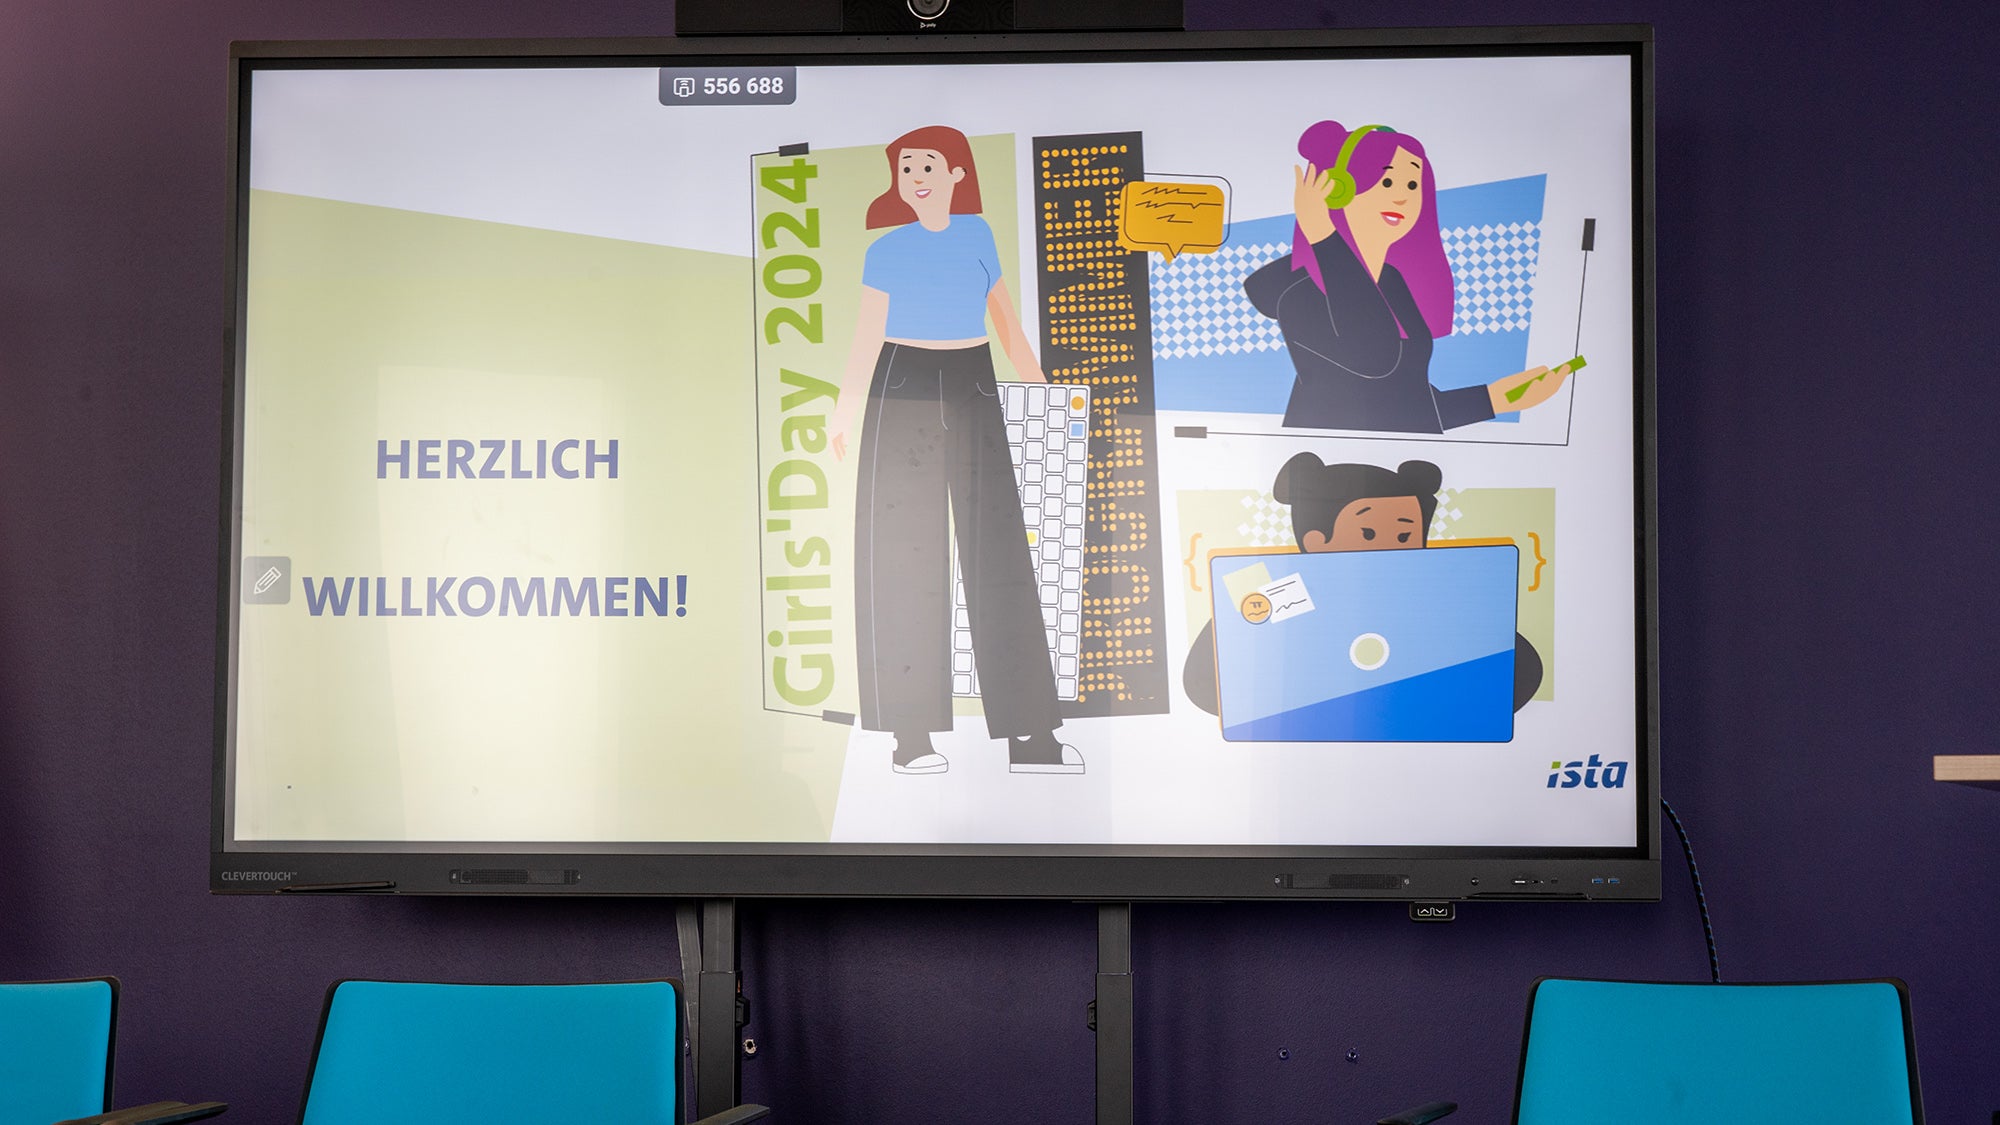 Ein Präsentationsbildschirm in einem Konferenzraum zeigt eine Willkommensfolie mit der Aufschrift "HERZLICH WILLKOMMEN!" für den Girls Day 2024, mit Illustrationen von Mädchen, die sich mit Technologie und Wissenschaft beschäftigen.